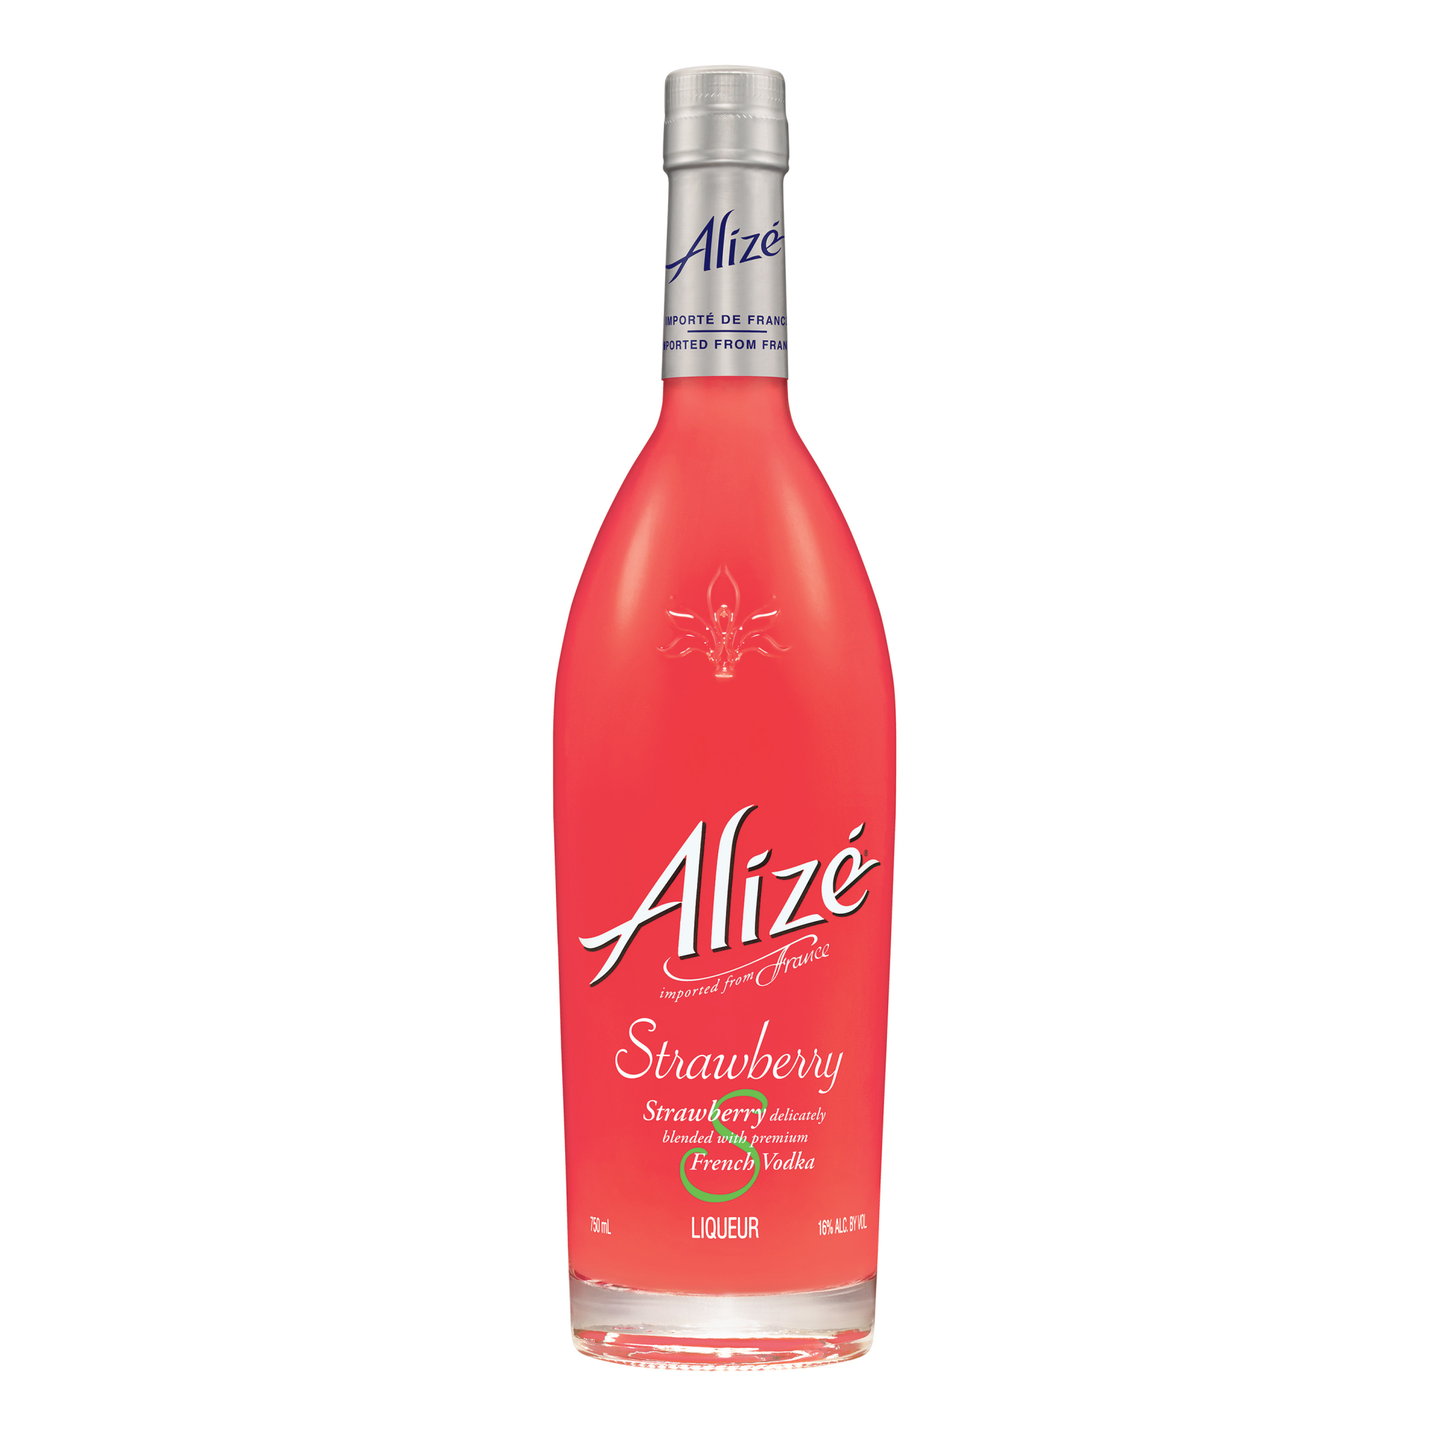 Alize Strawberry Liquor - Liquor Geeks